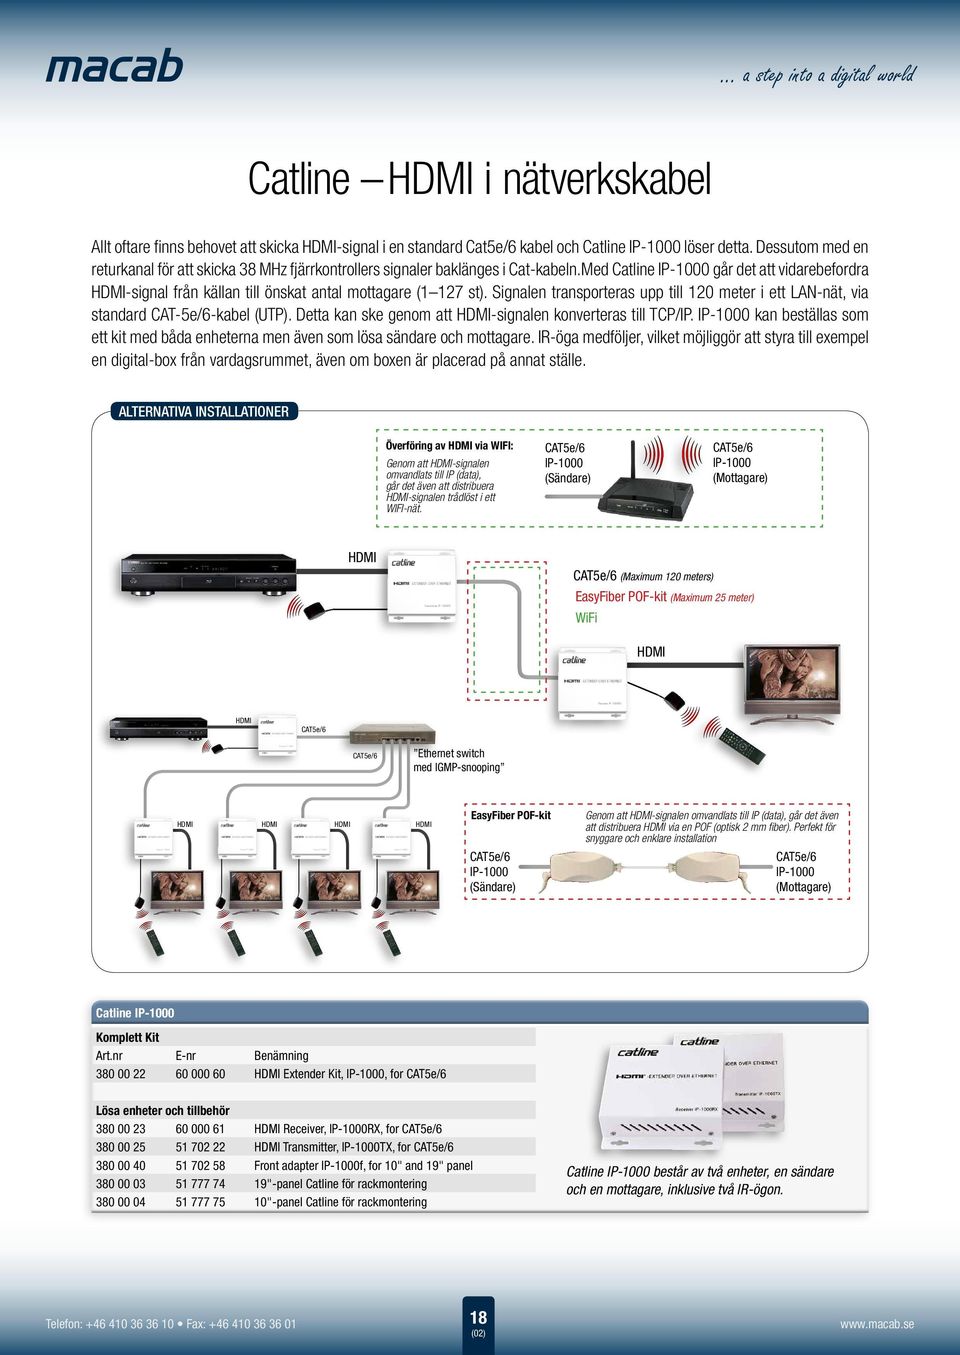 Med Catline IP-1000 går det att vidarebefordra HDMI-signal från källan till önskat antal mottagare (1 127 st).